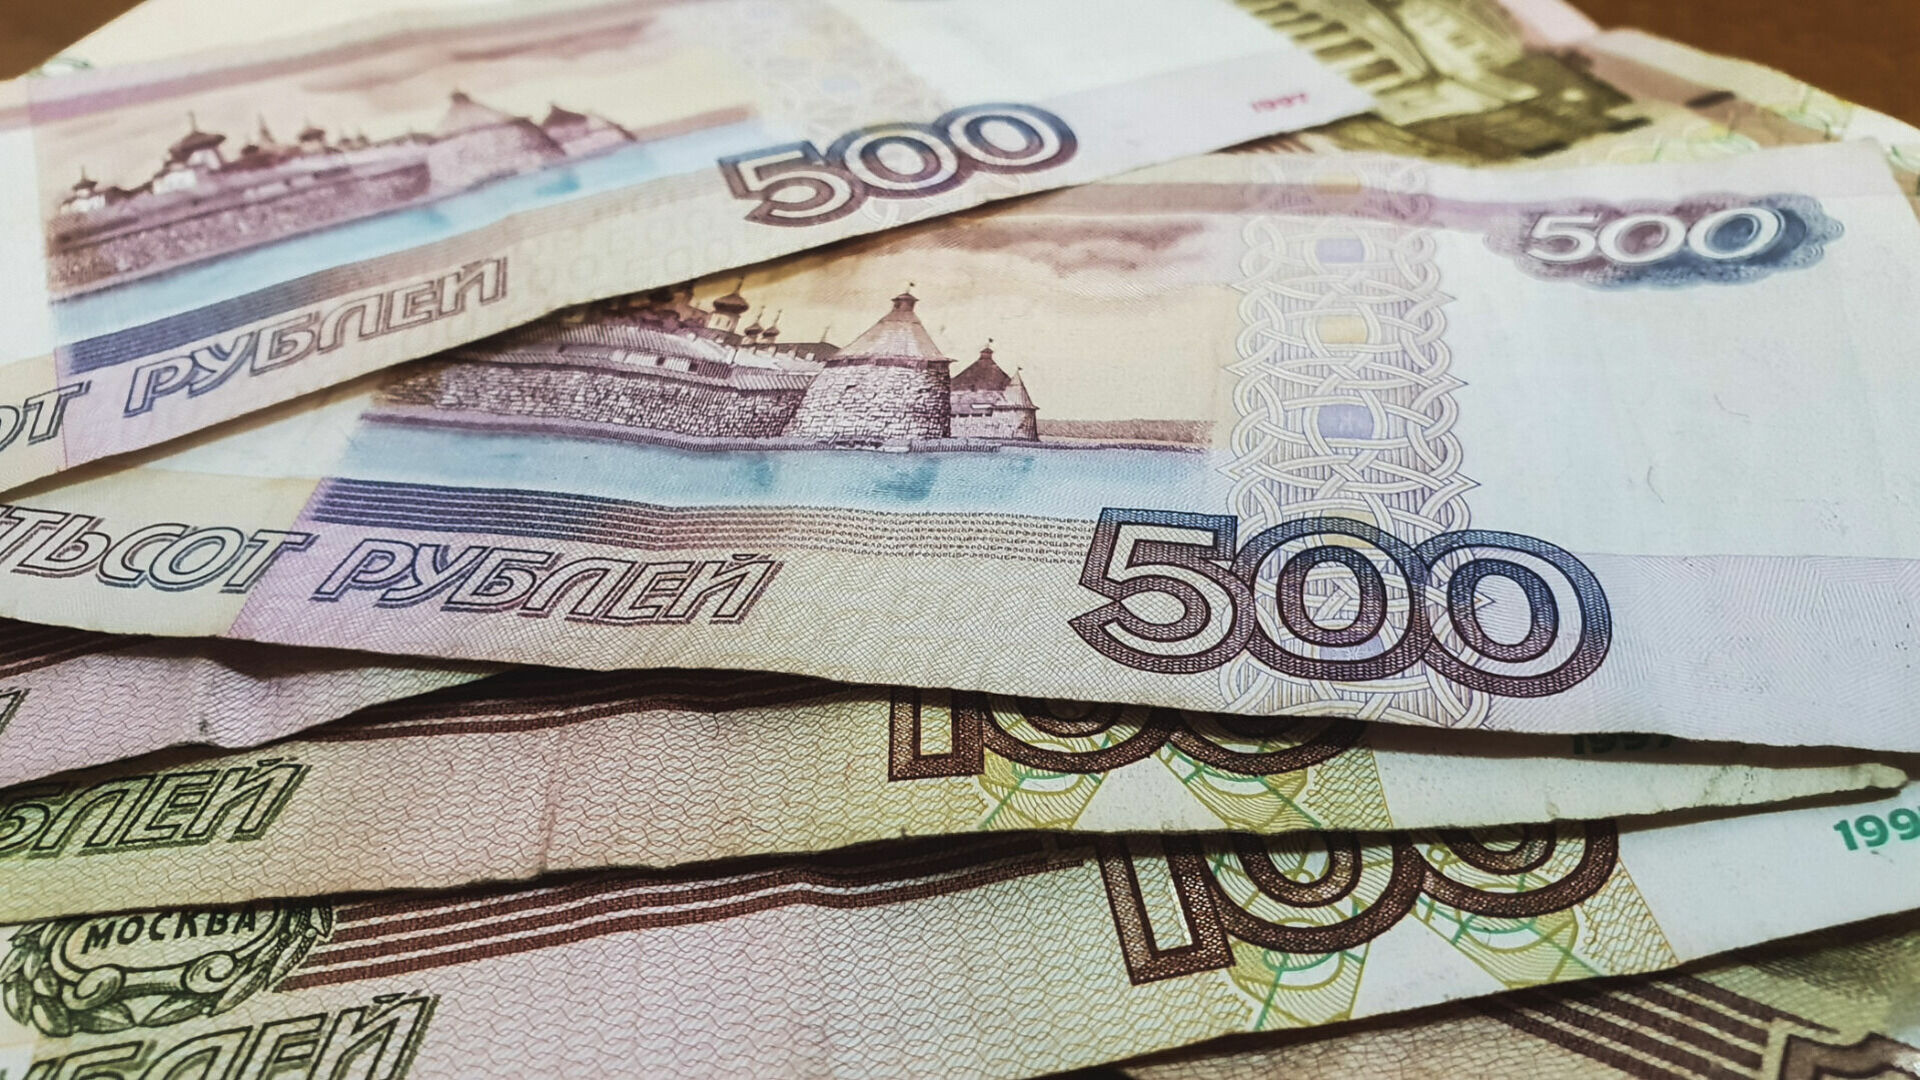 Кредитный потребительский кооператив в Ижевске обманул граждан на 6 млн рублей